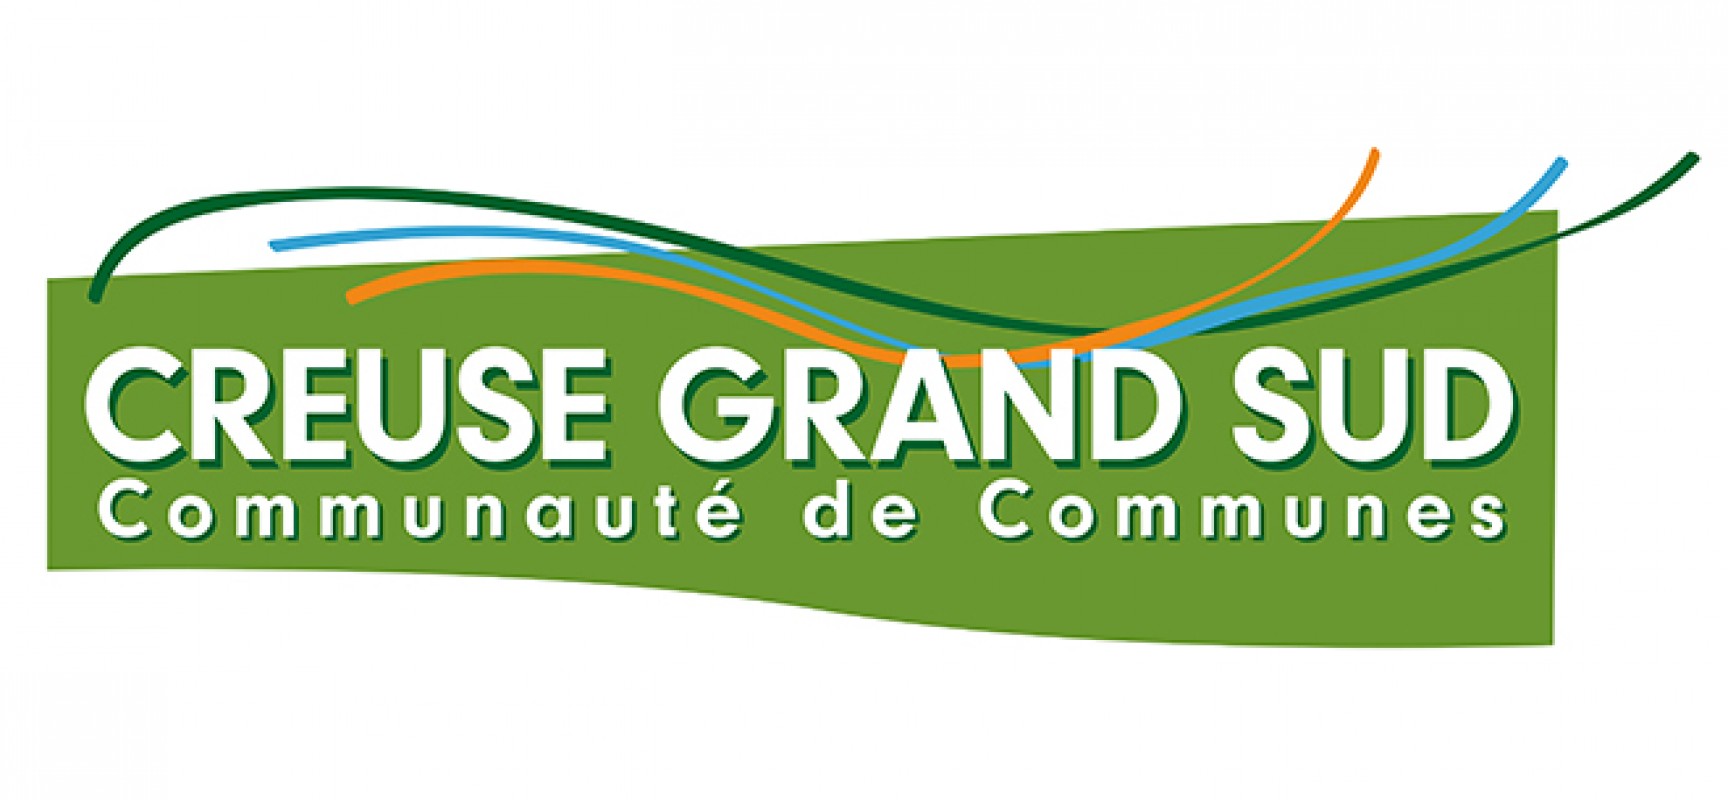 [Covid19-TerritoireEngagé] Plan de reprise d’activité au sein de la Communauté de communes Creuse Grand Sud – mai 2020